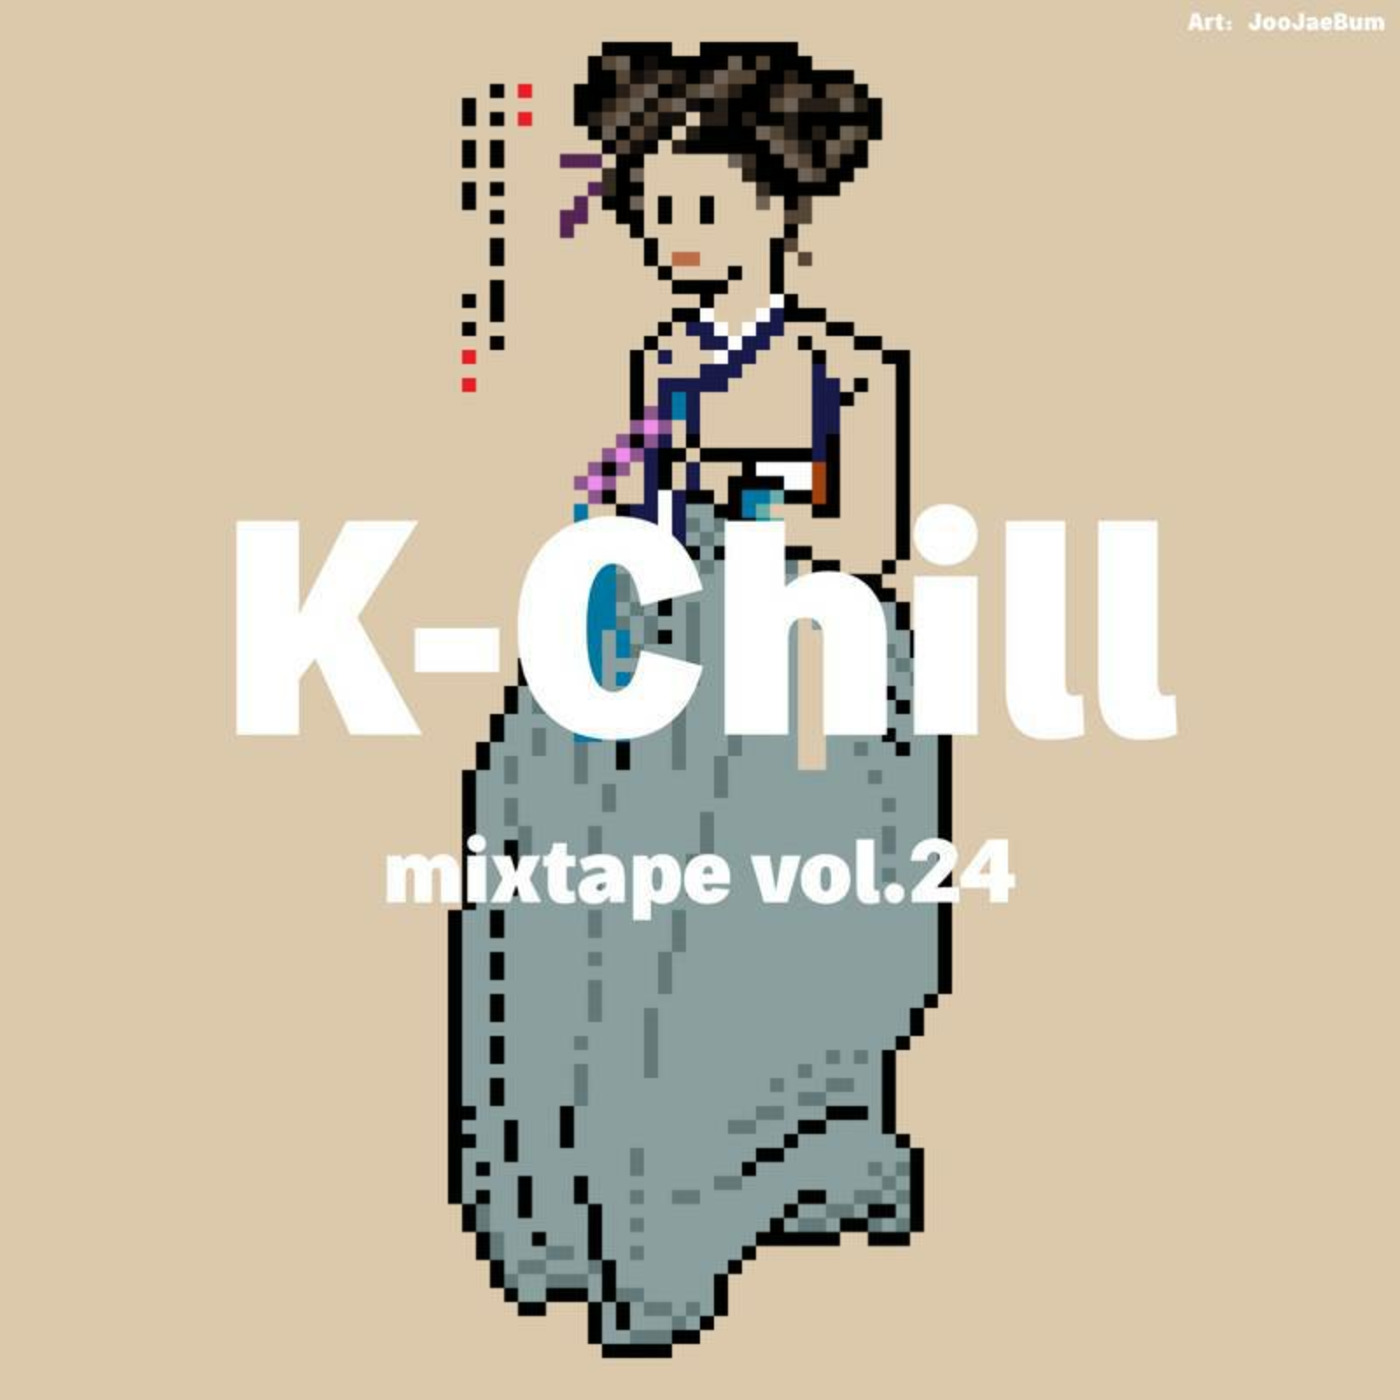 K-Chill mixtape vol.24